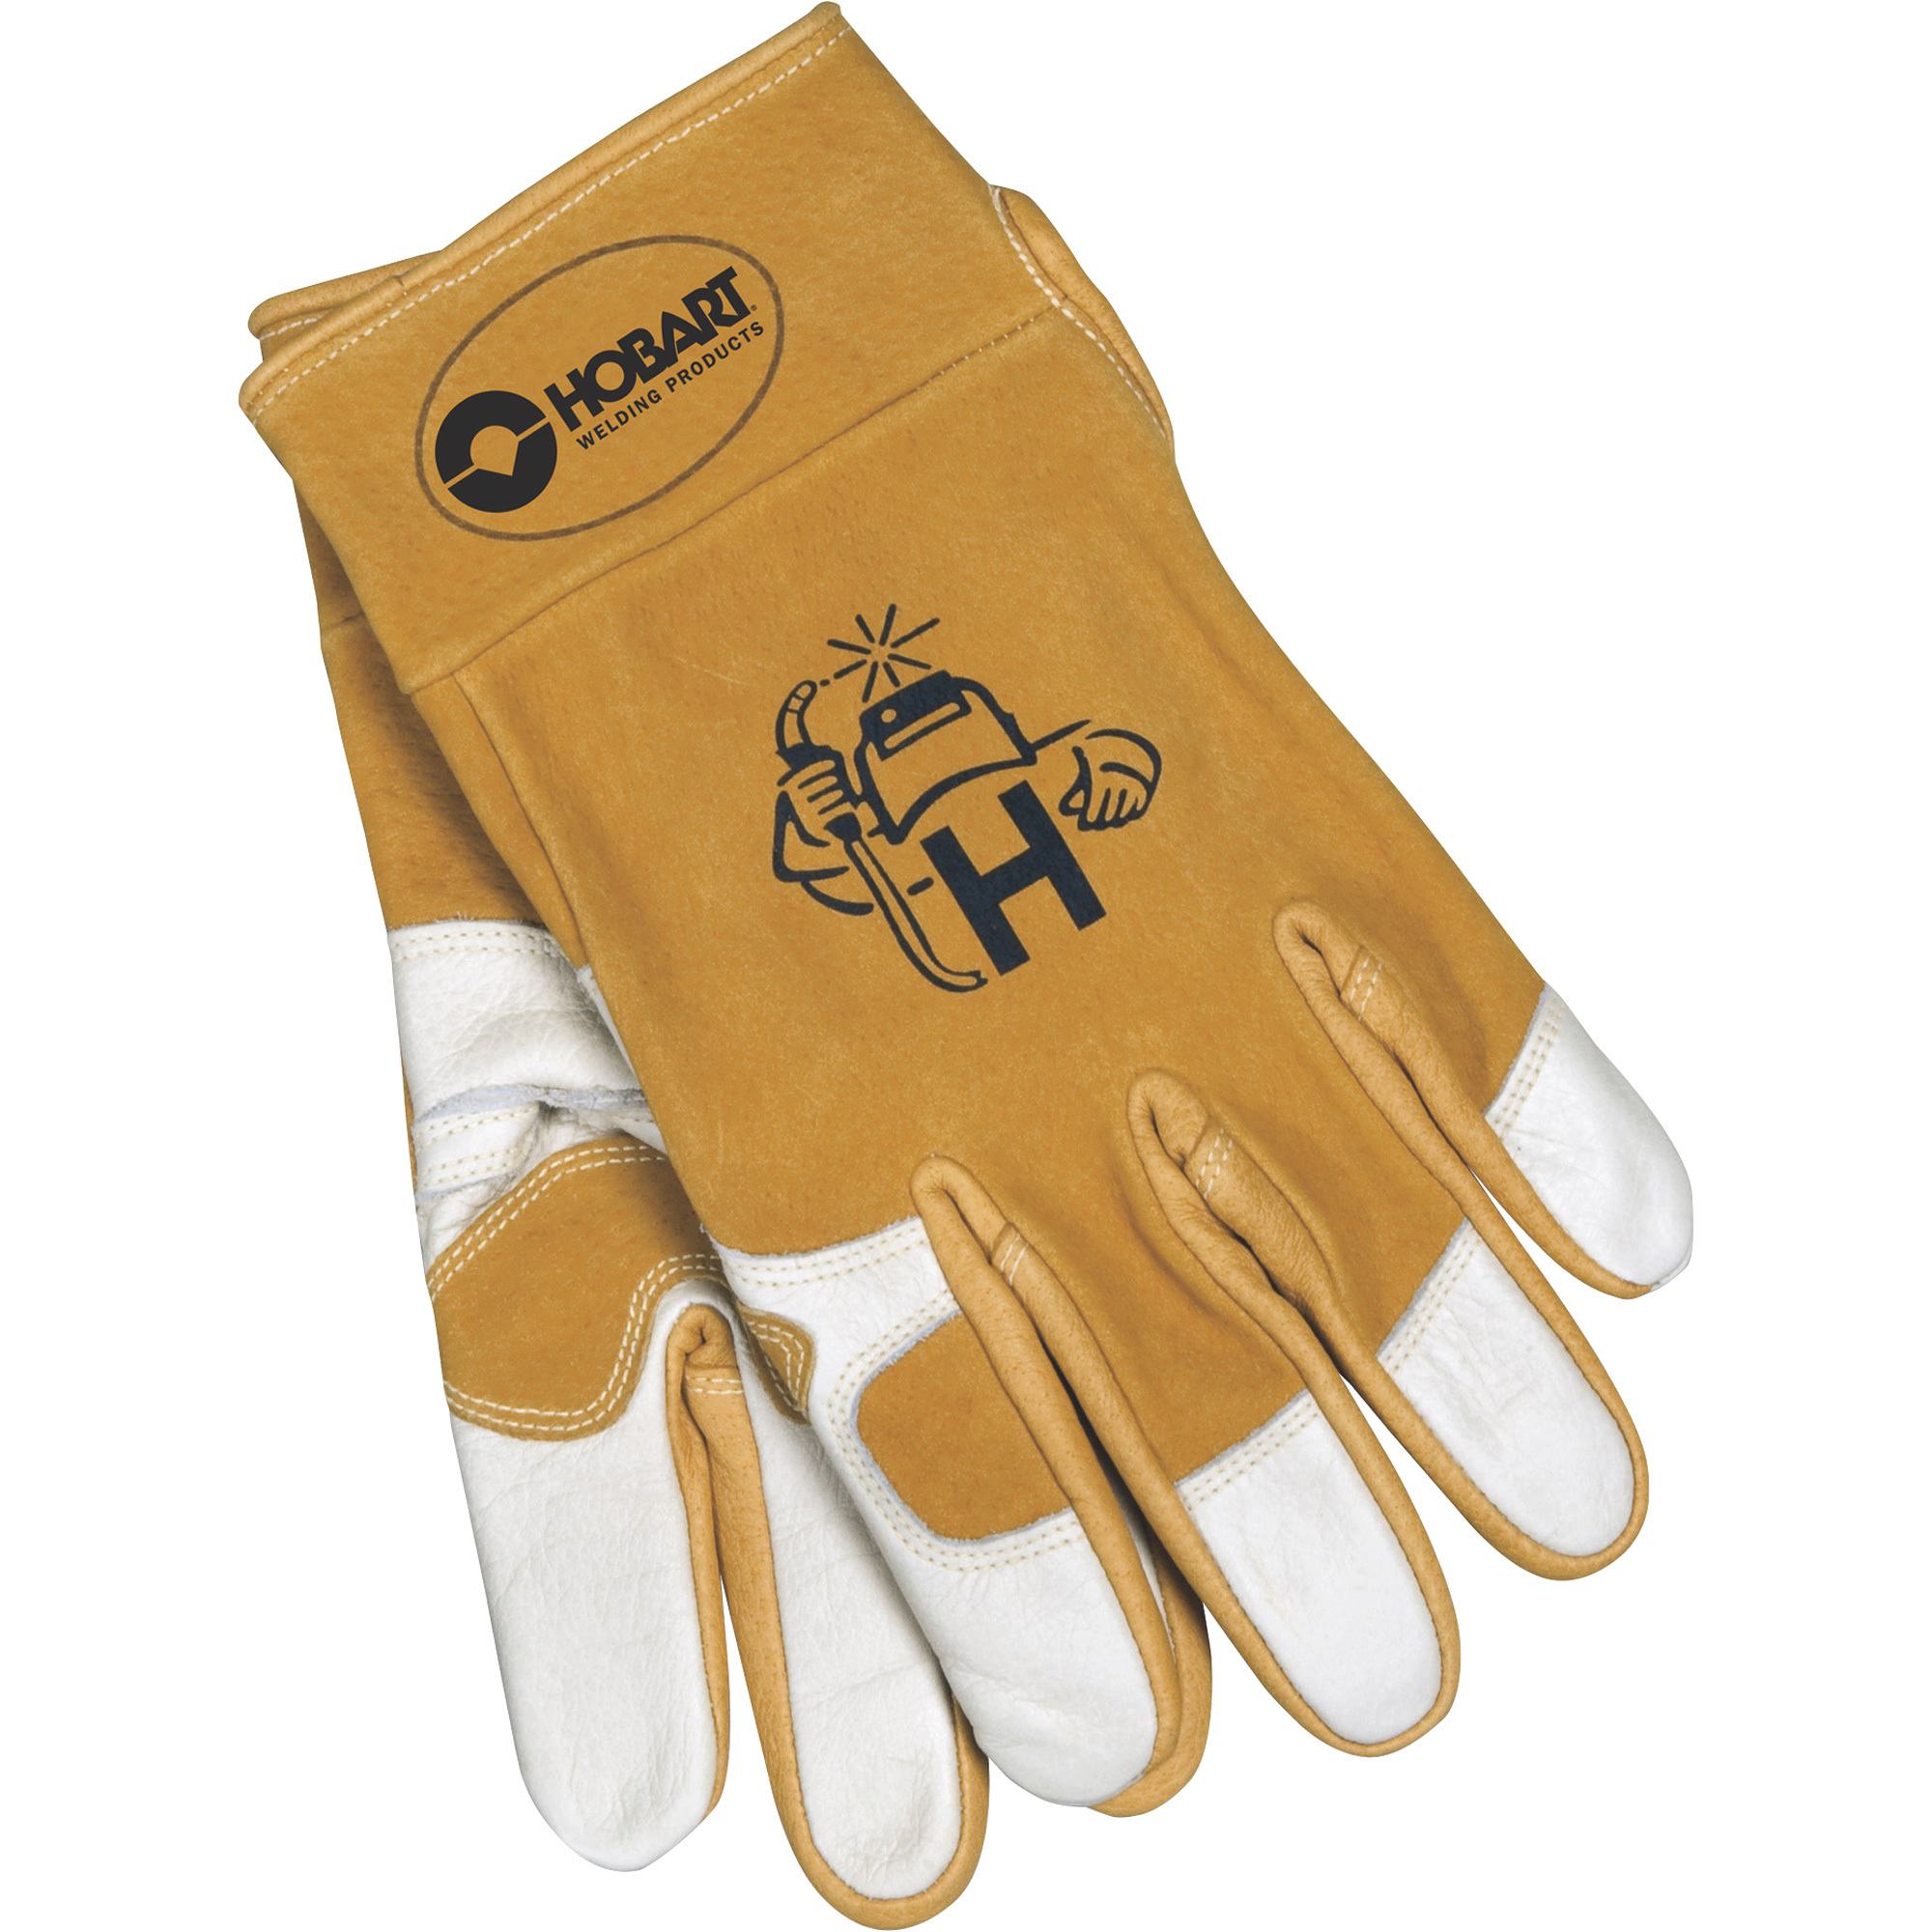 Hobart Premium Welding Gloves â Cowhide, Beige and White, X-Large, Pair, Model 770648